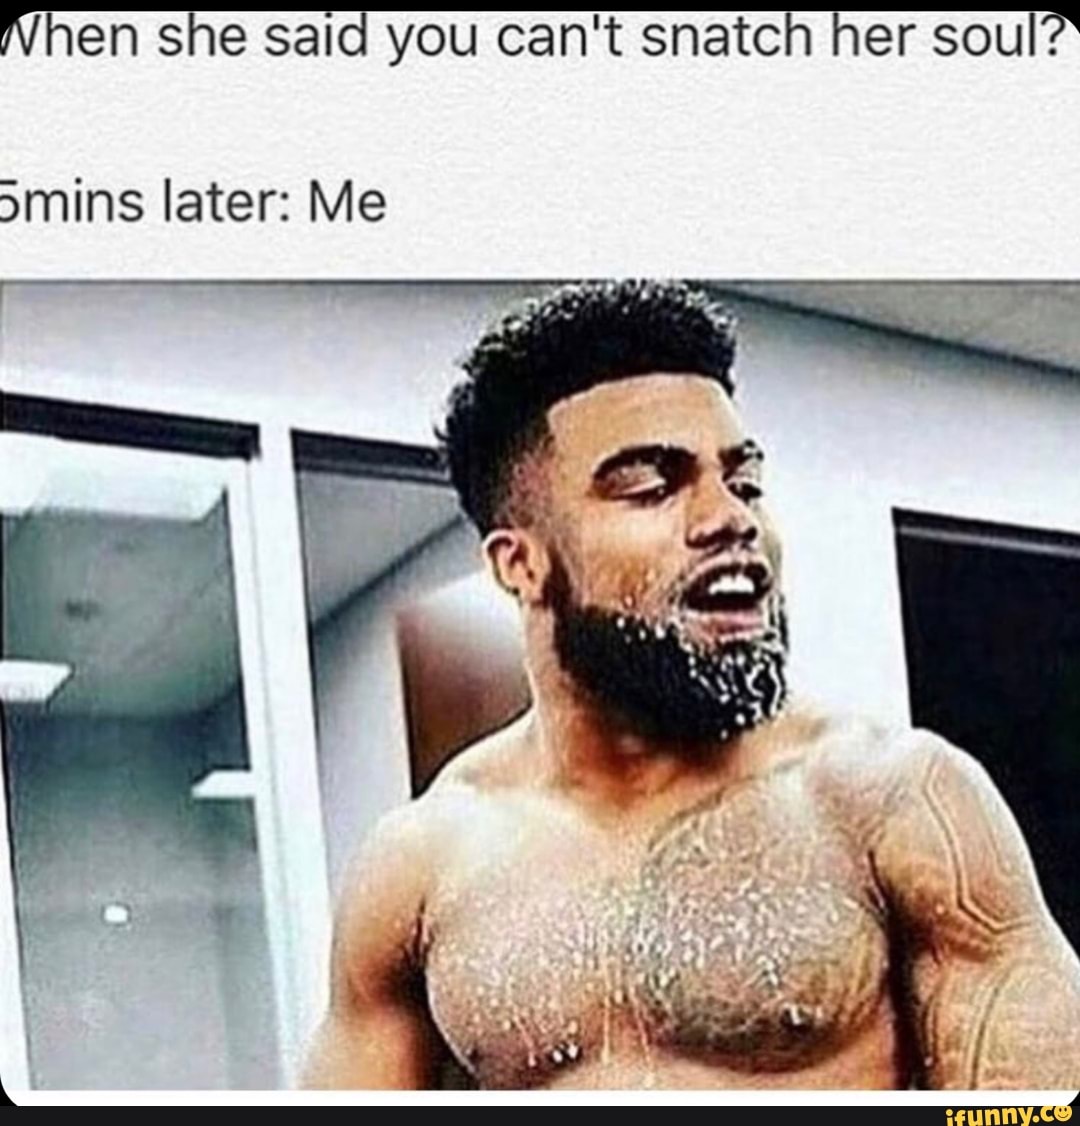 Snatch her soul